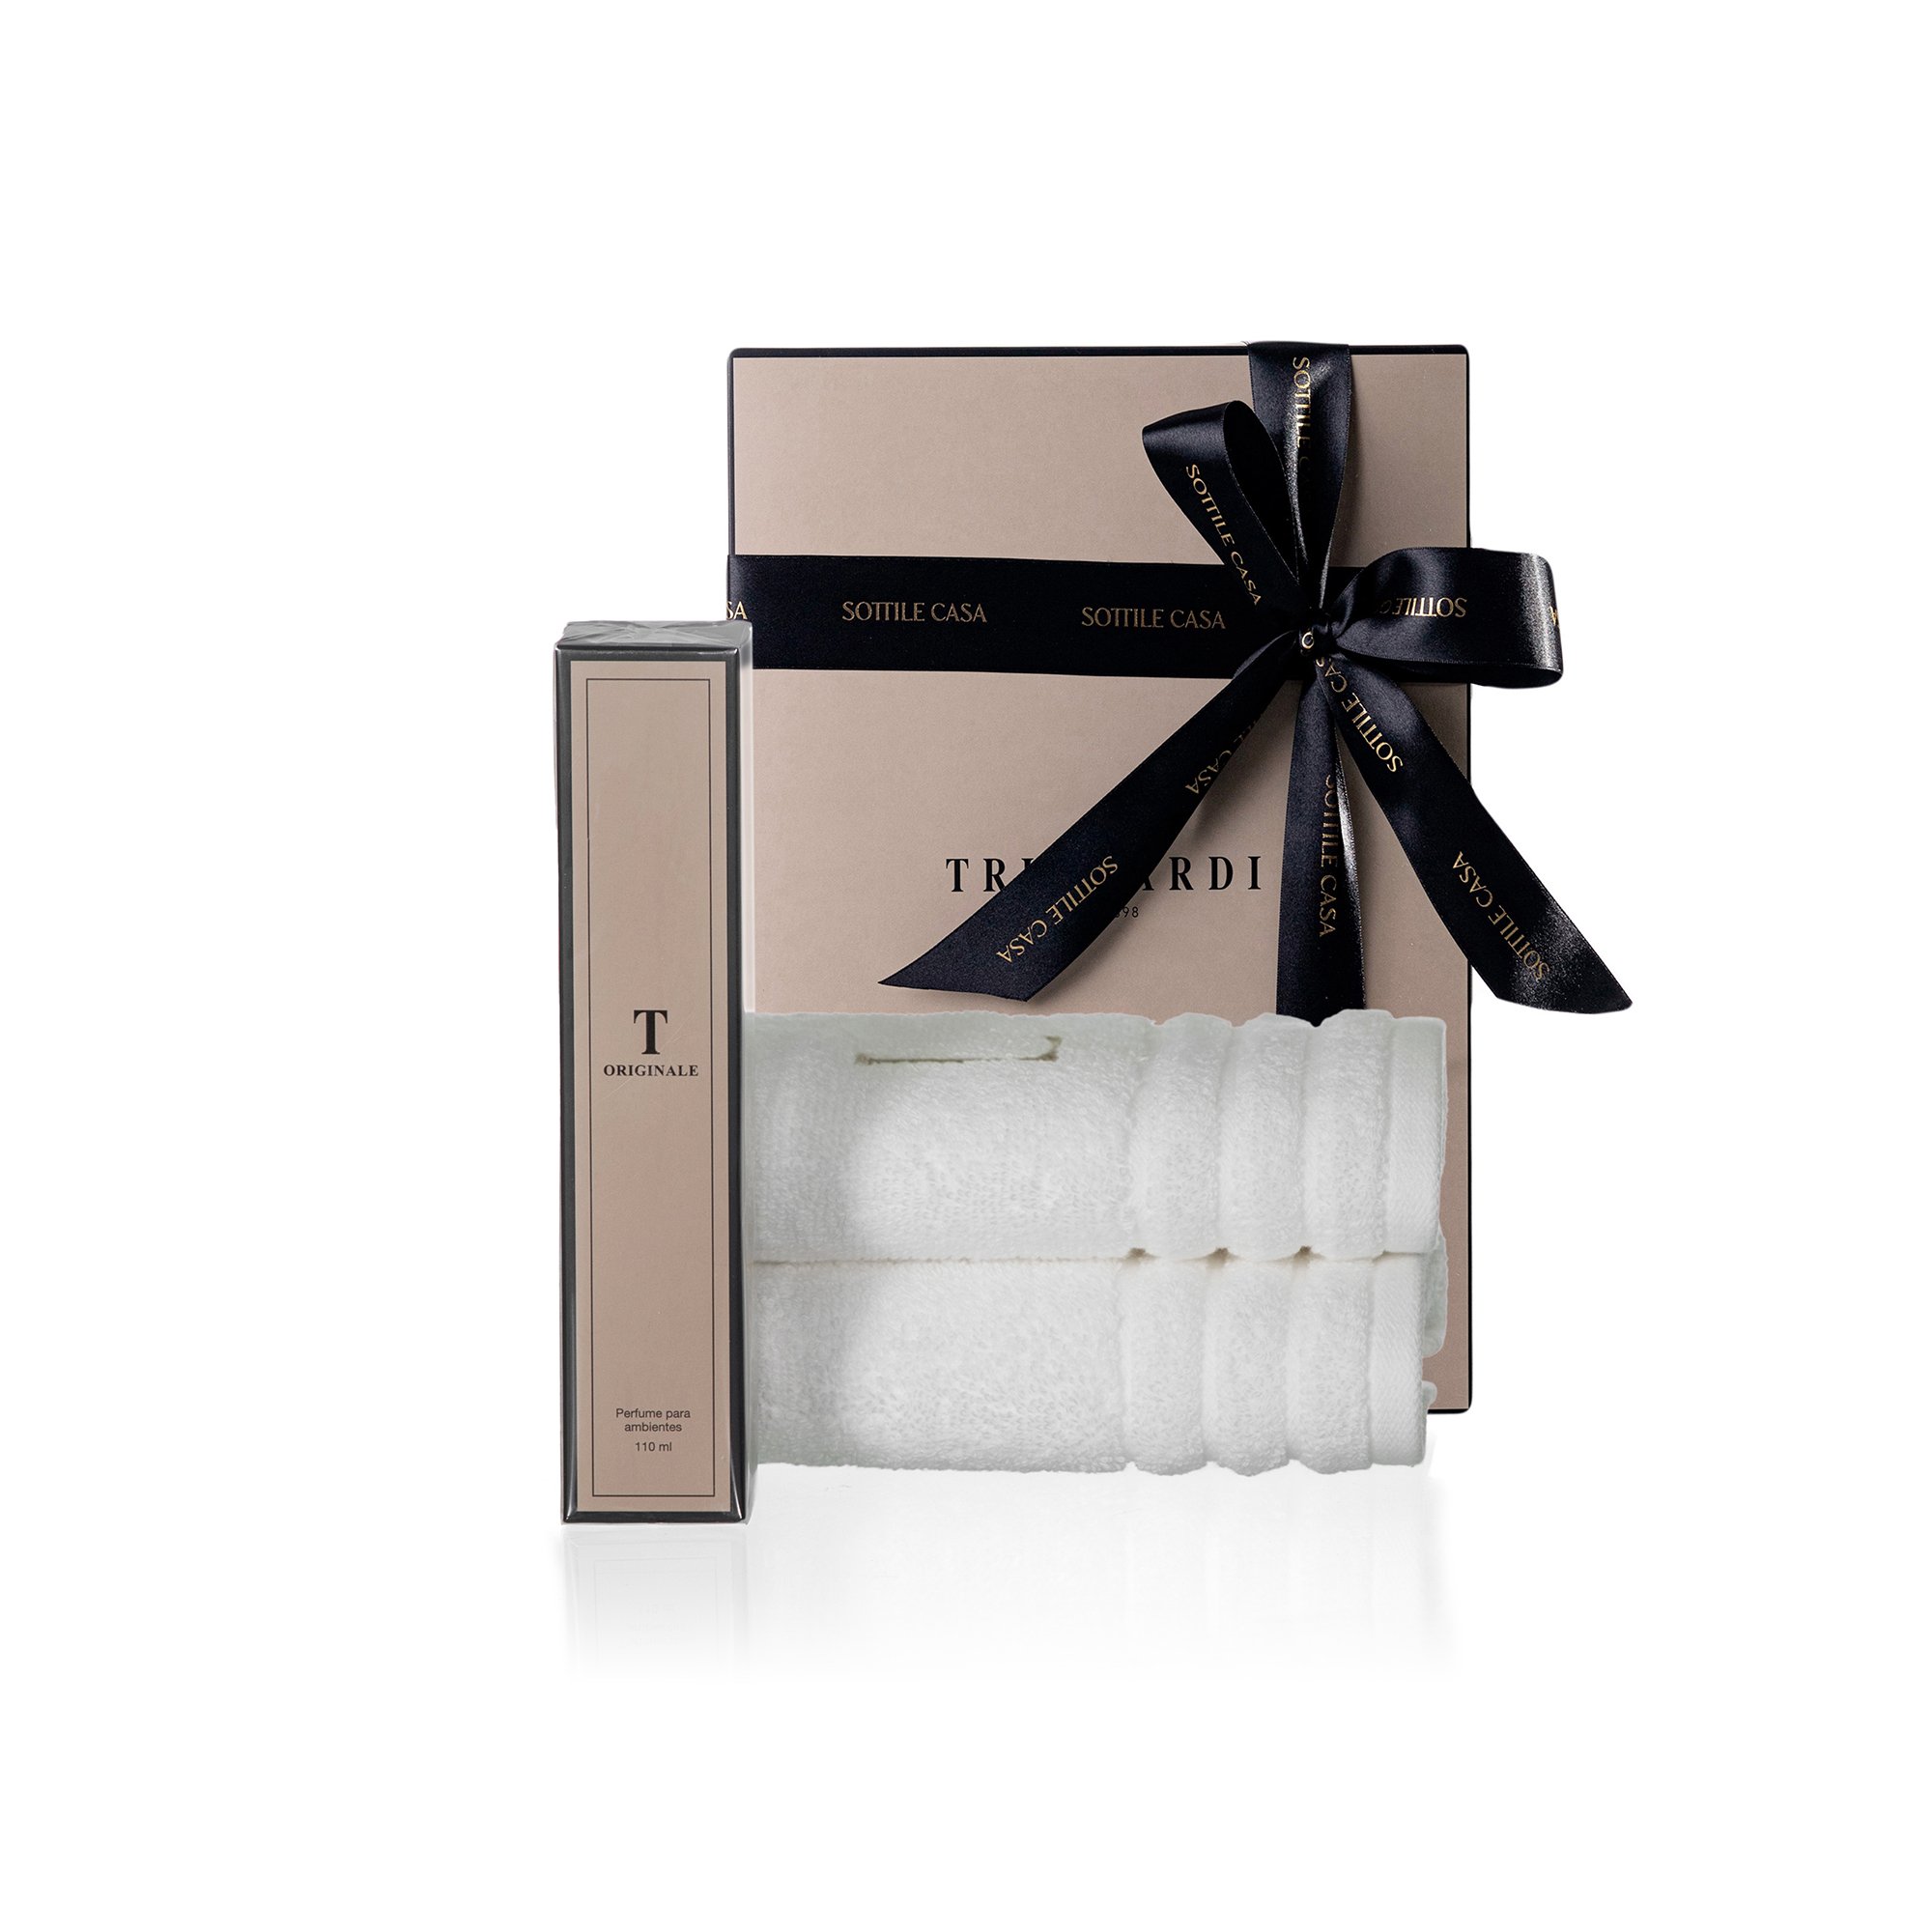 kit jogo 2 toalhas de lavabo trussardi imperiale branco com perfume para ambientes trussardi 110ml originale